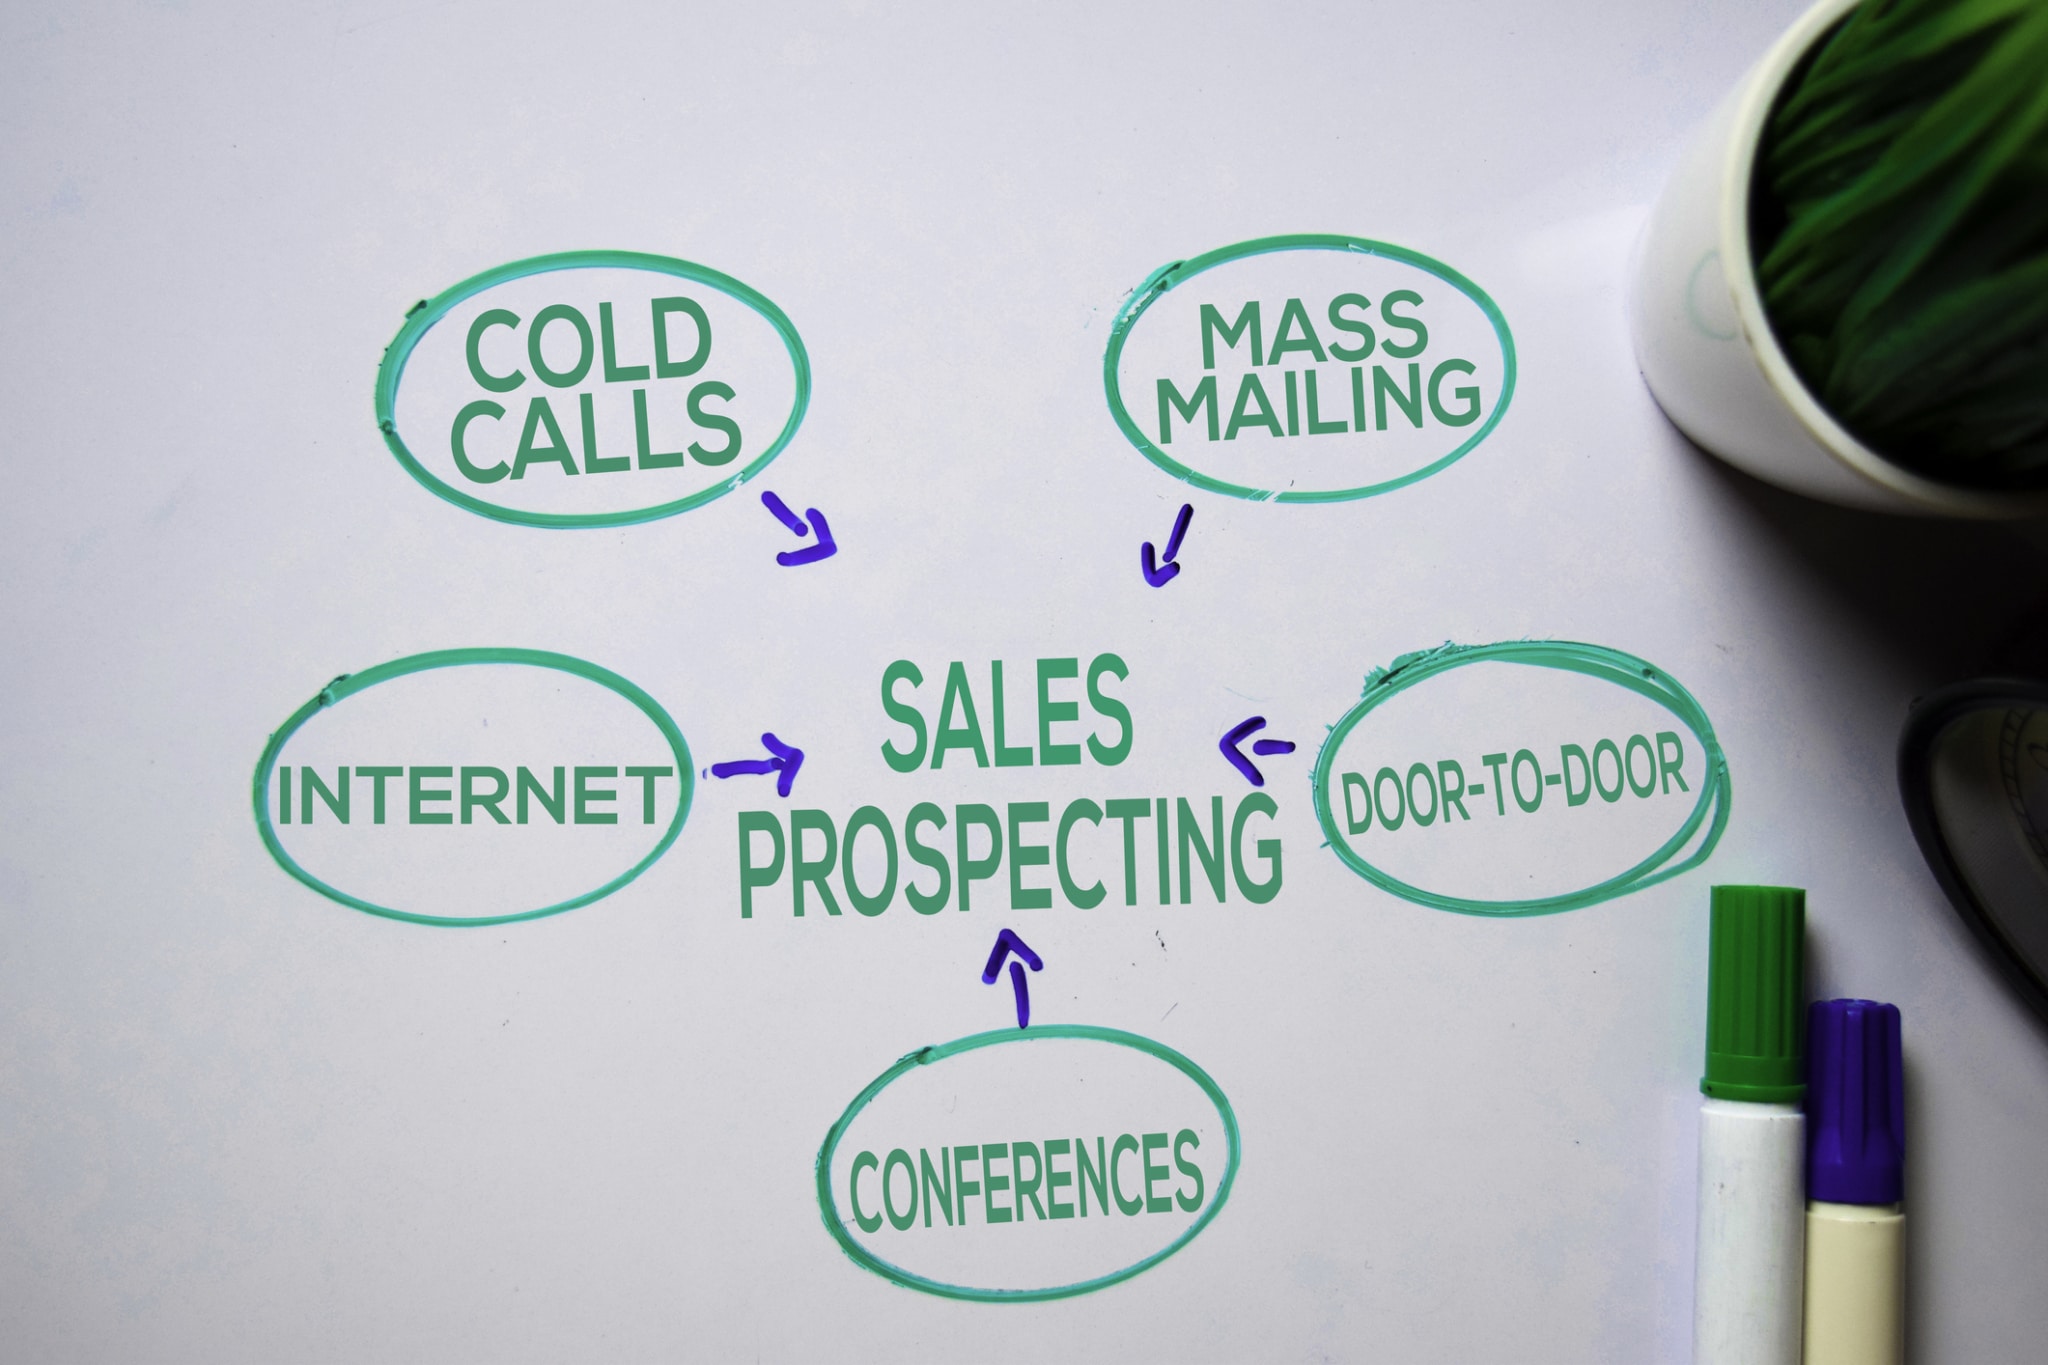 Sales-prospecting